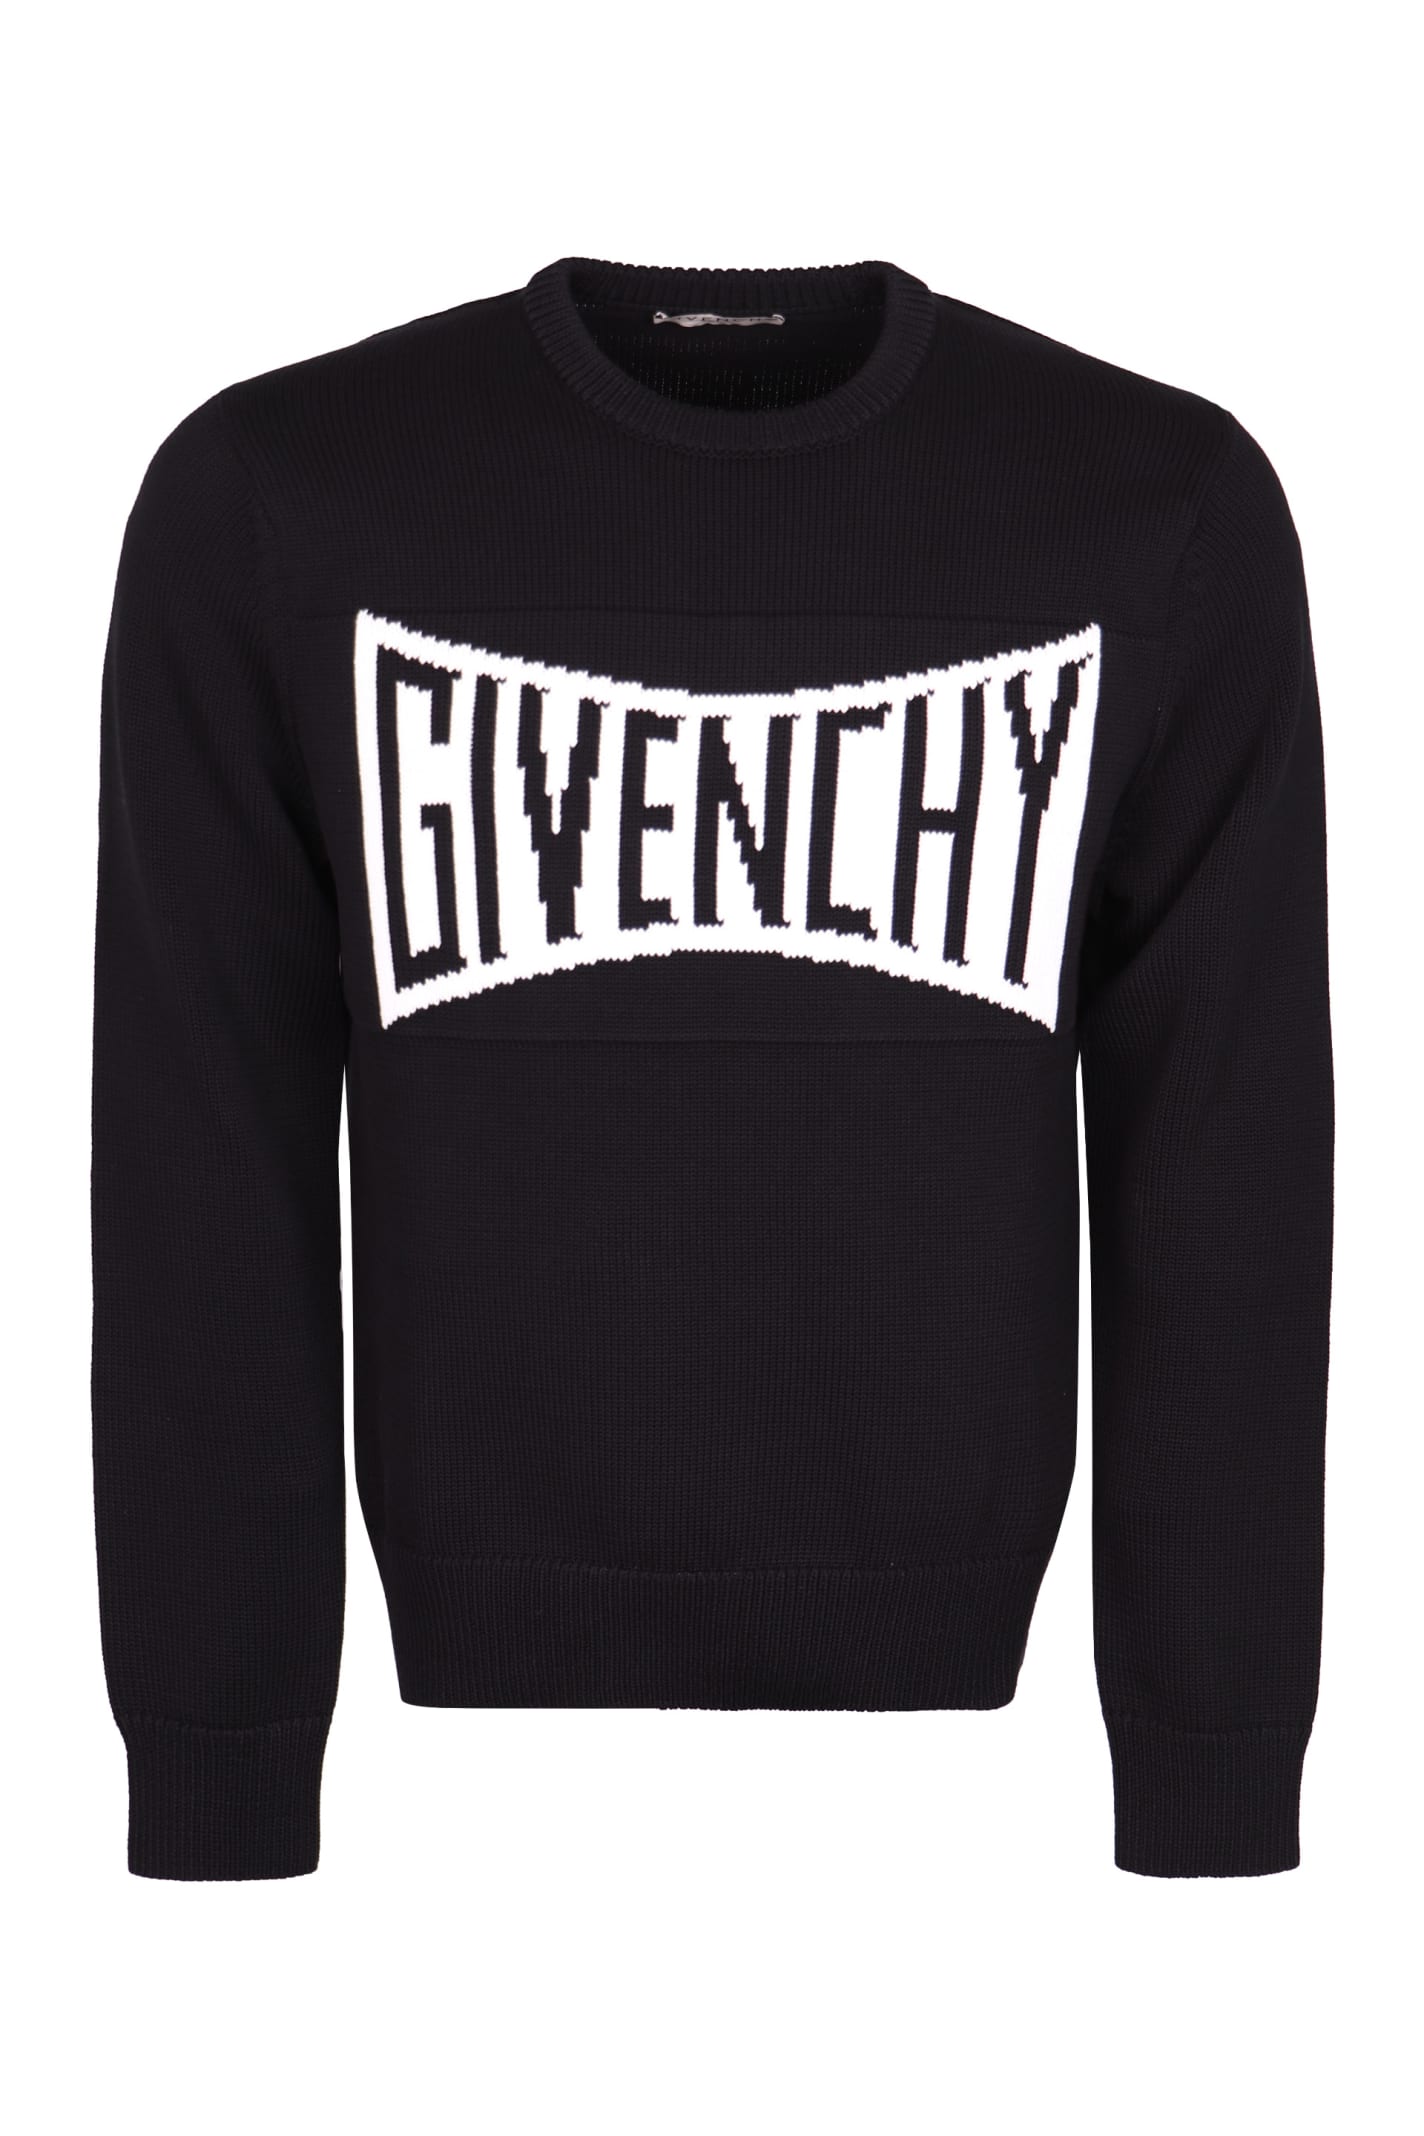 Givenchy Logo Crew-neck Pullover